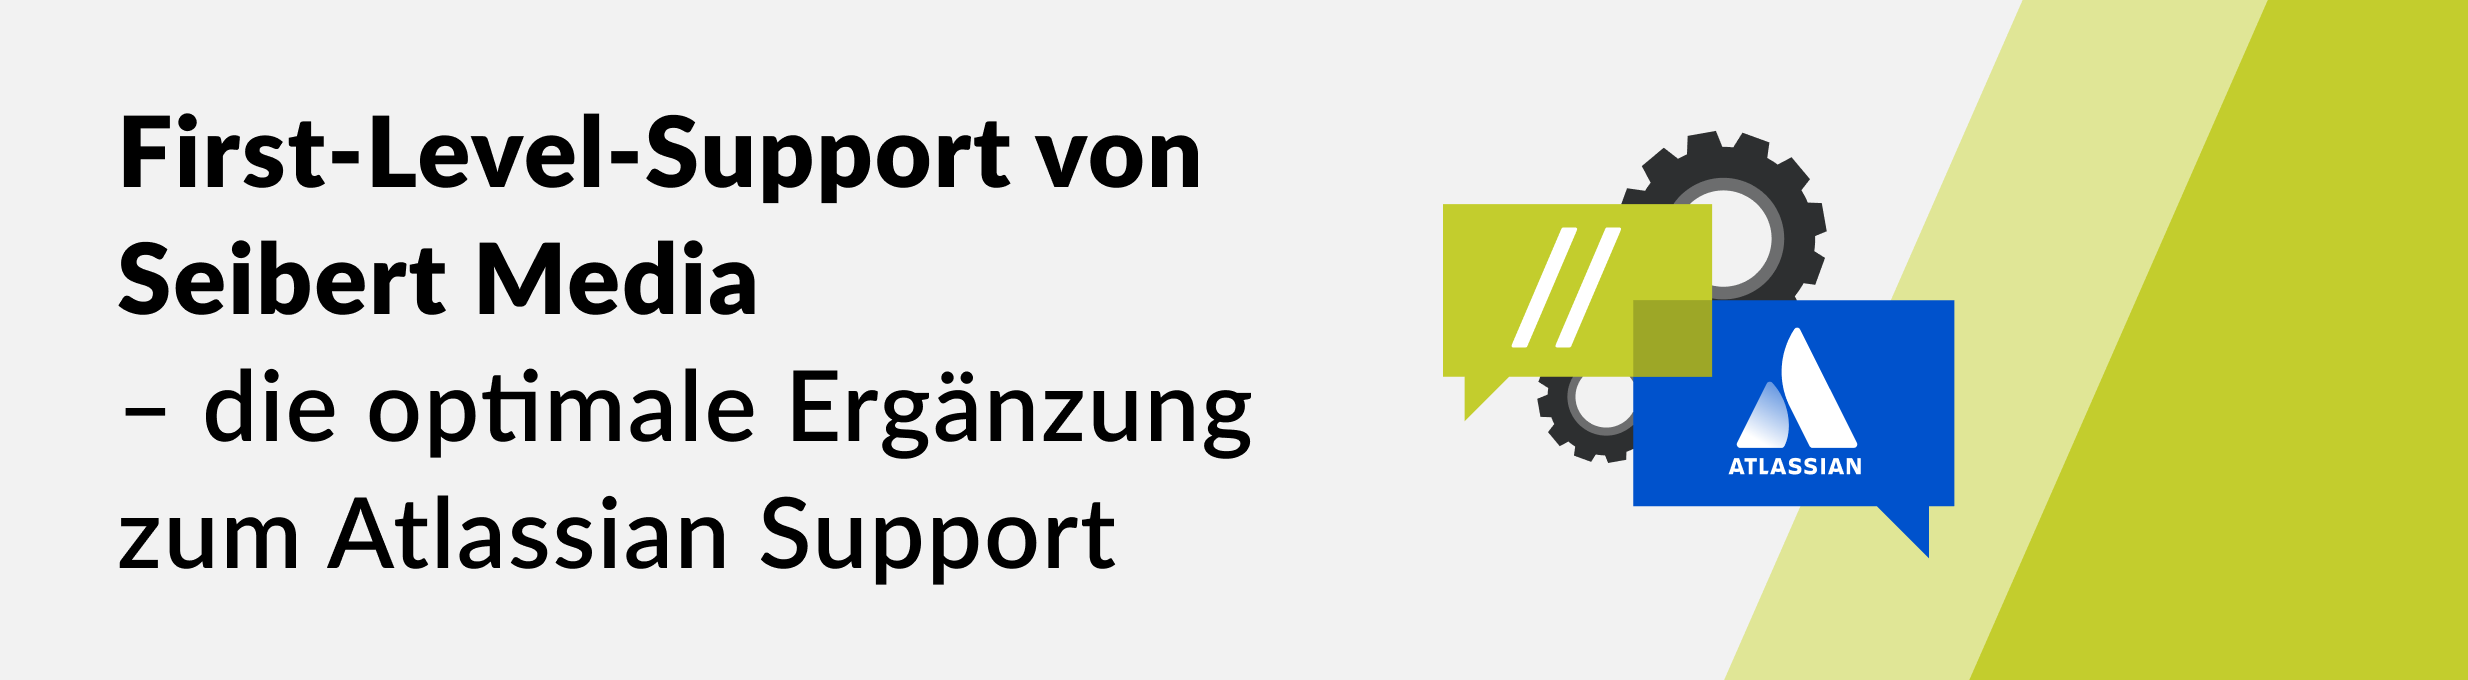 First-Level-Support von Seibert Media – die optimale Ergänzung zum Atlassian Support